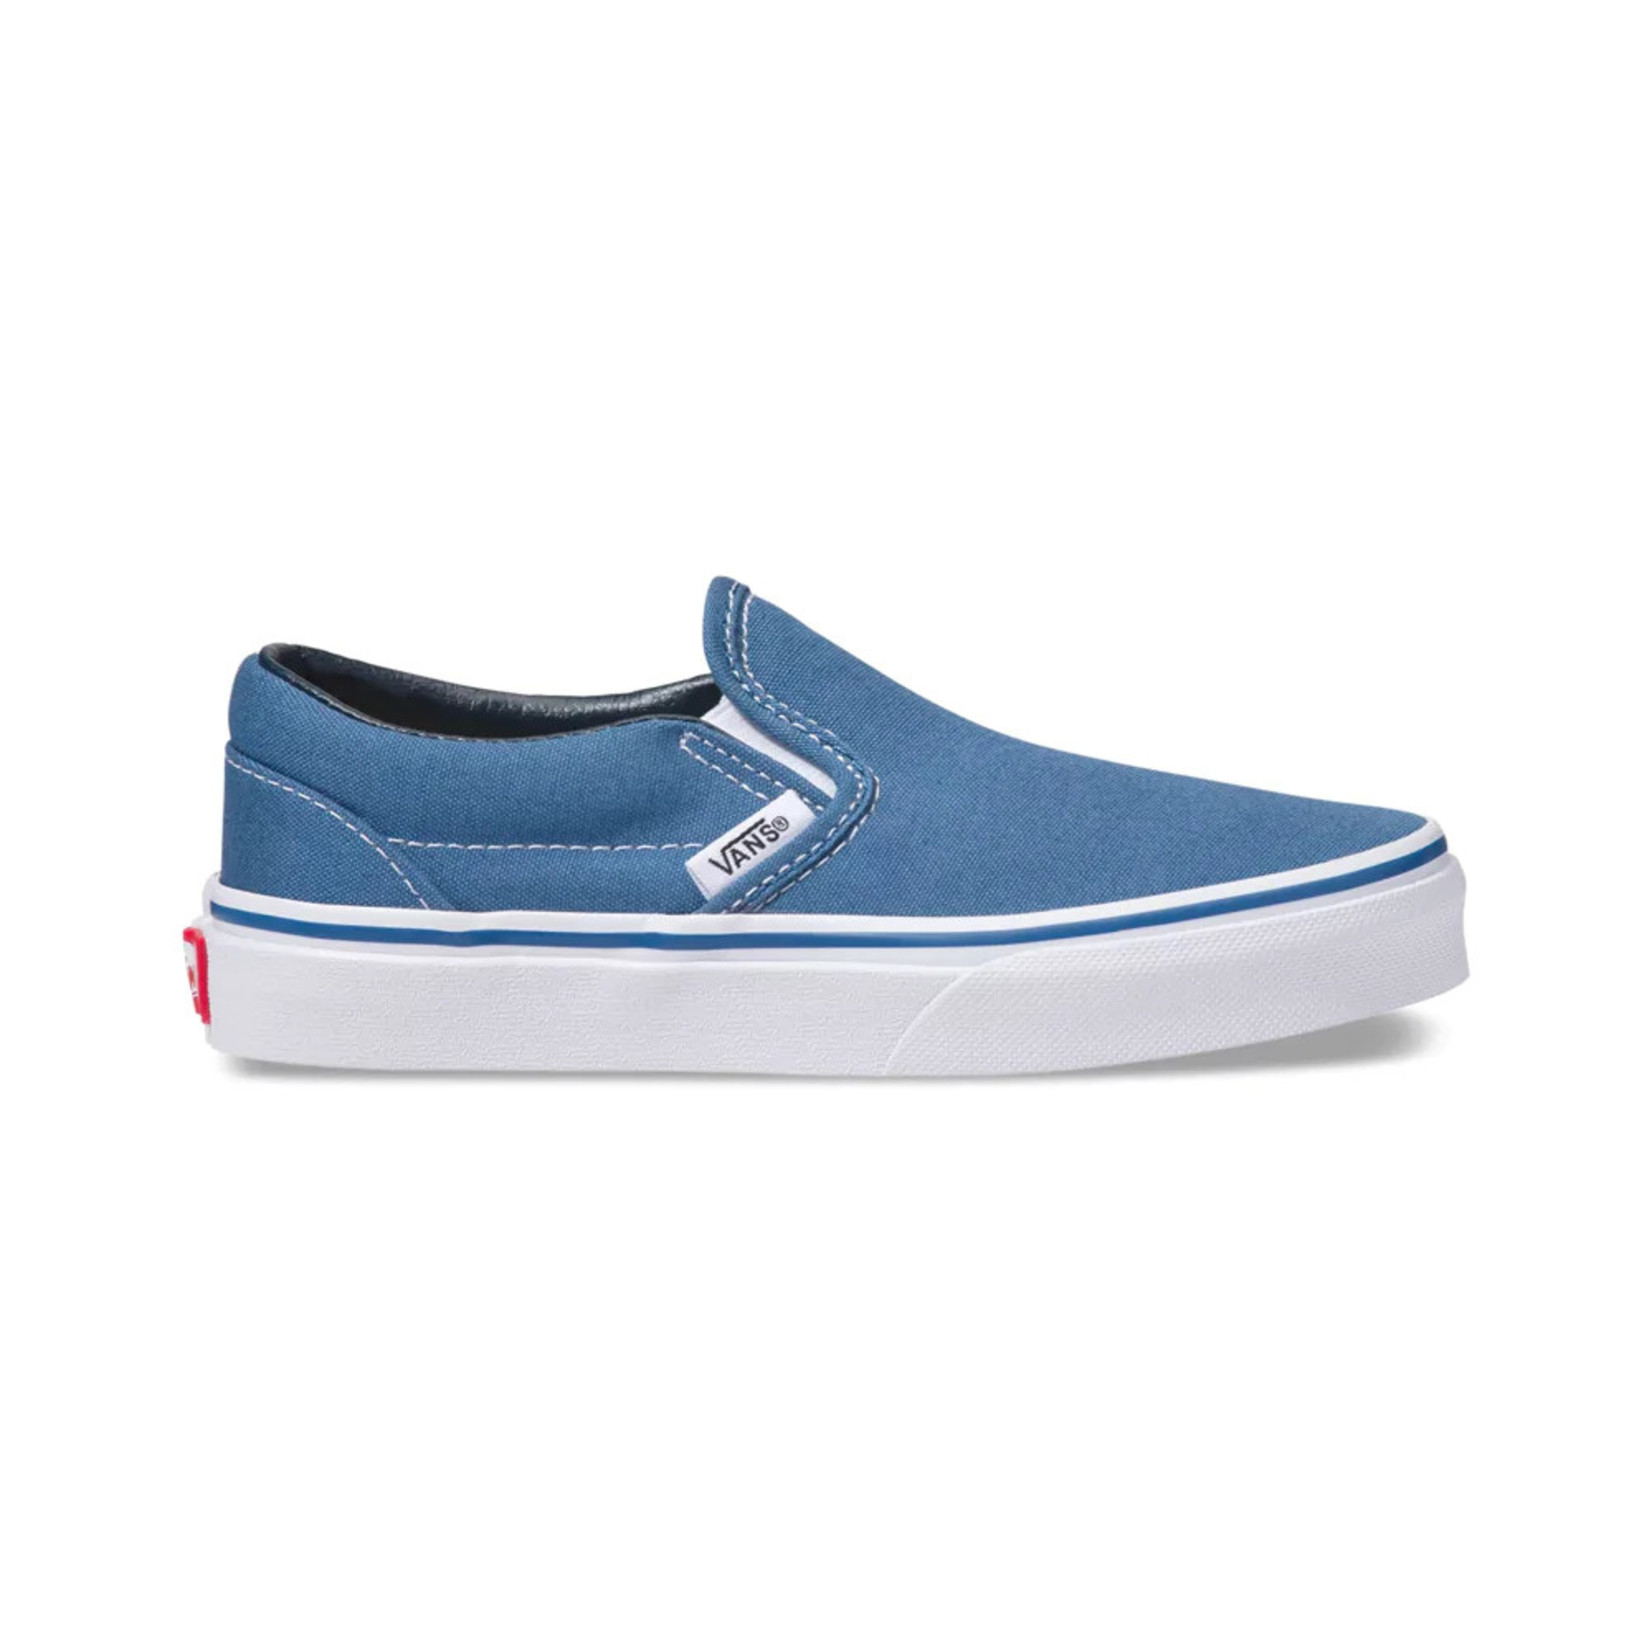 Vans Vans Classic Slip-On Youth Skate Shoes - Navy/True White -